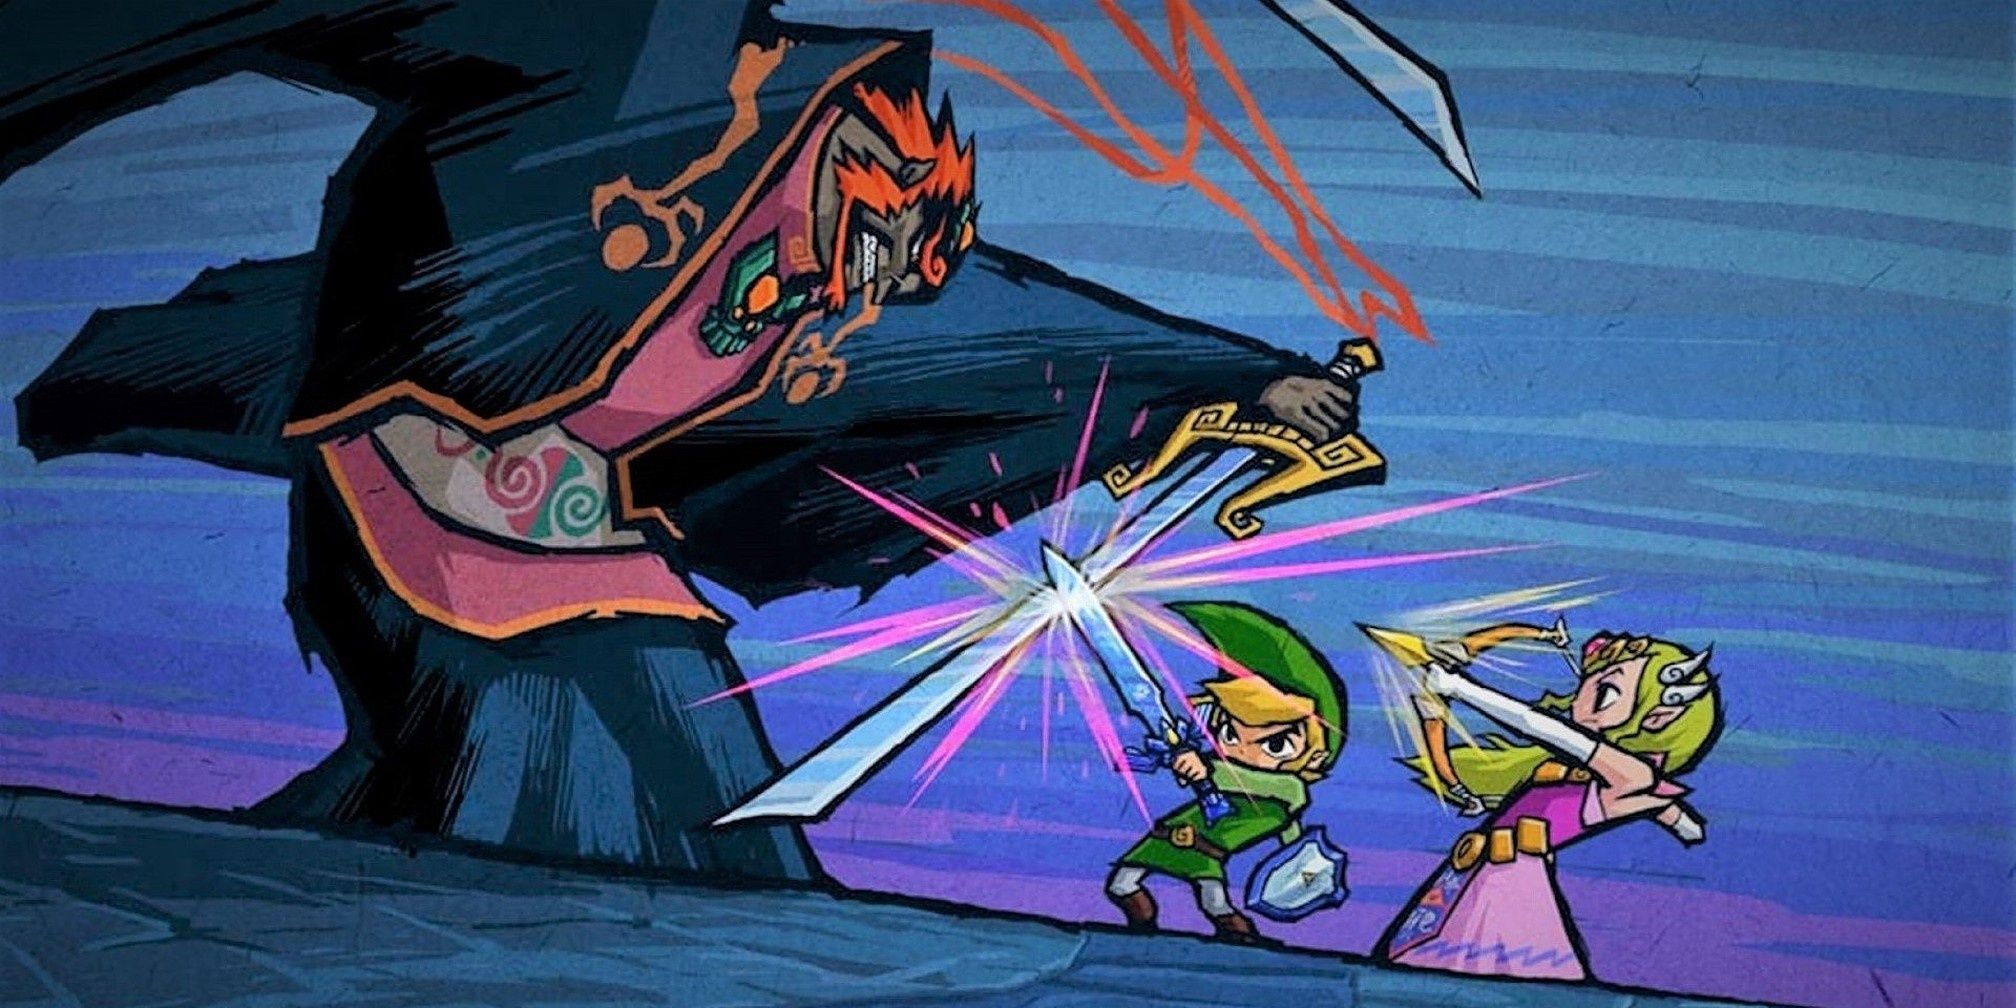 Link and Zelda attack Ganondorf in The Wind Waker.